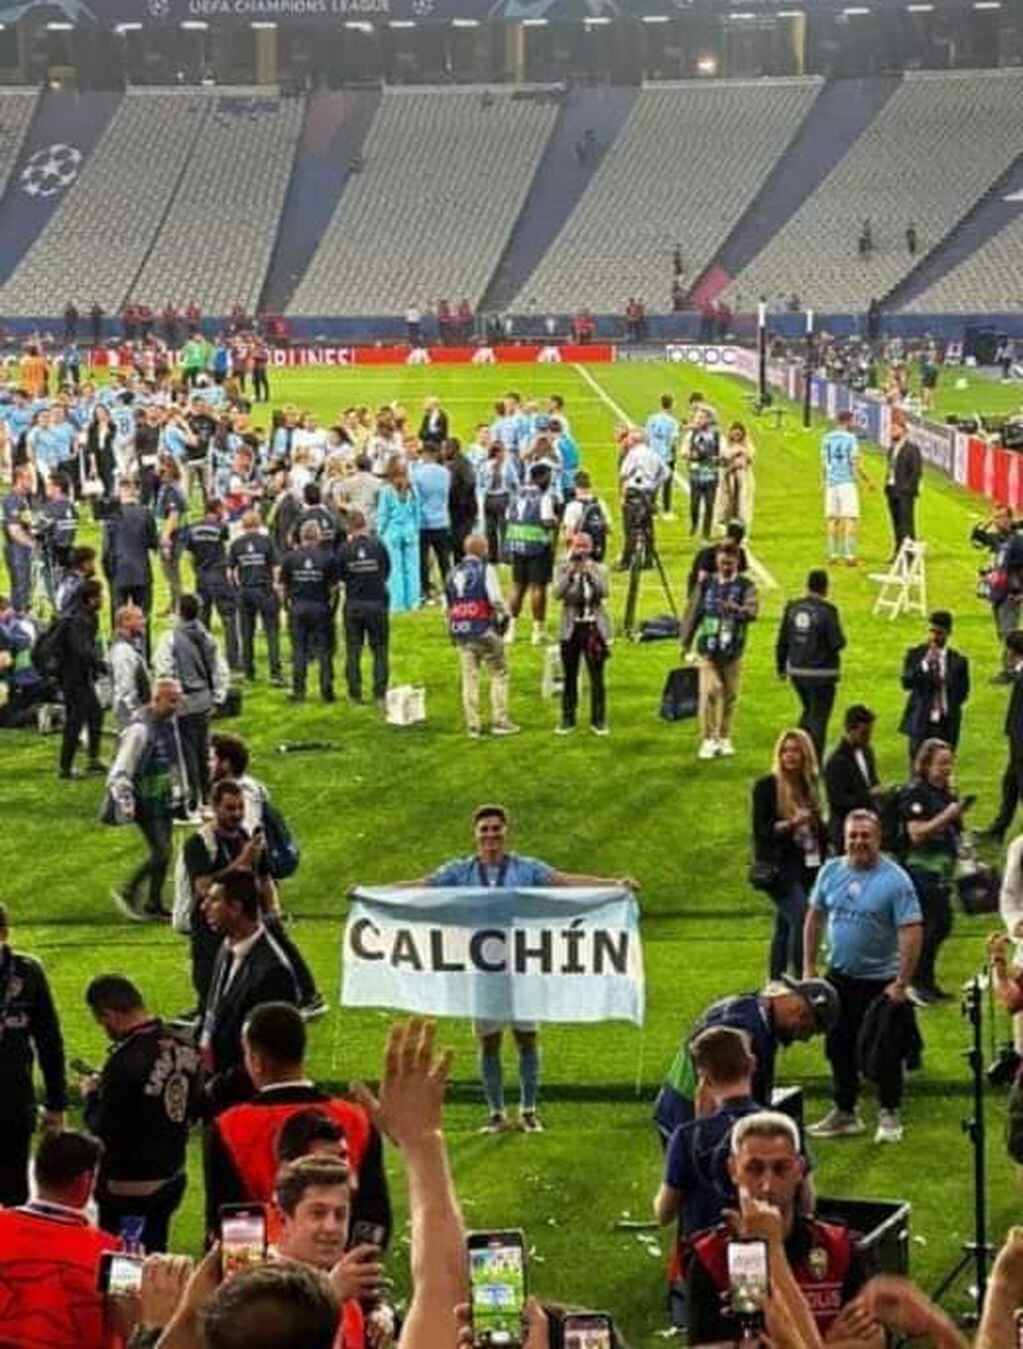 El cordobés desplegó una bandera recordando a su pueblo natal tras la consagración en la Champions League.